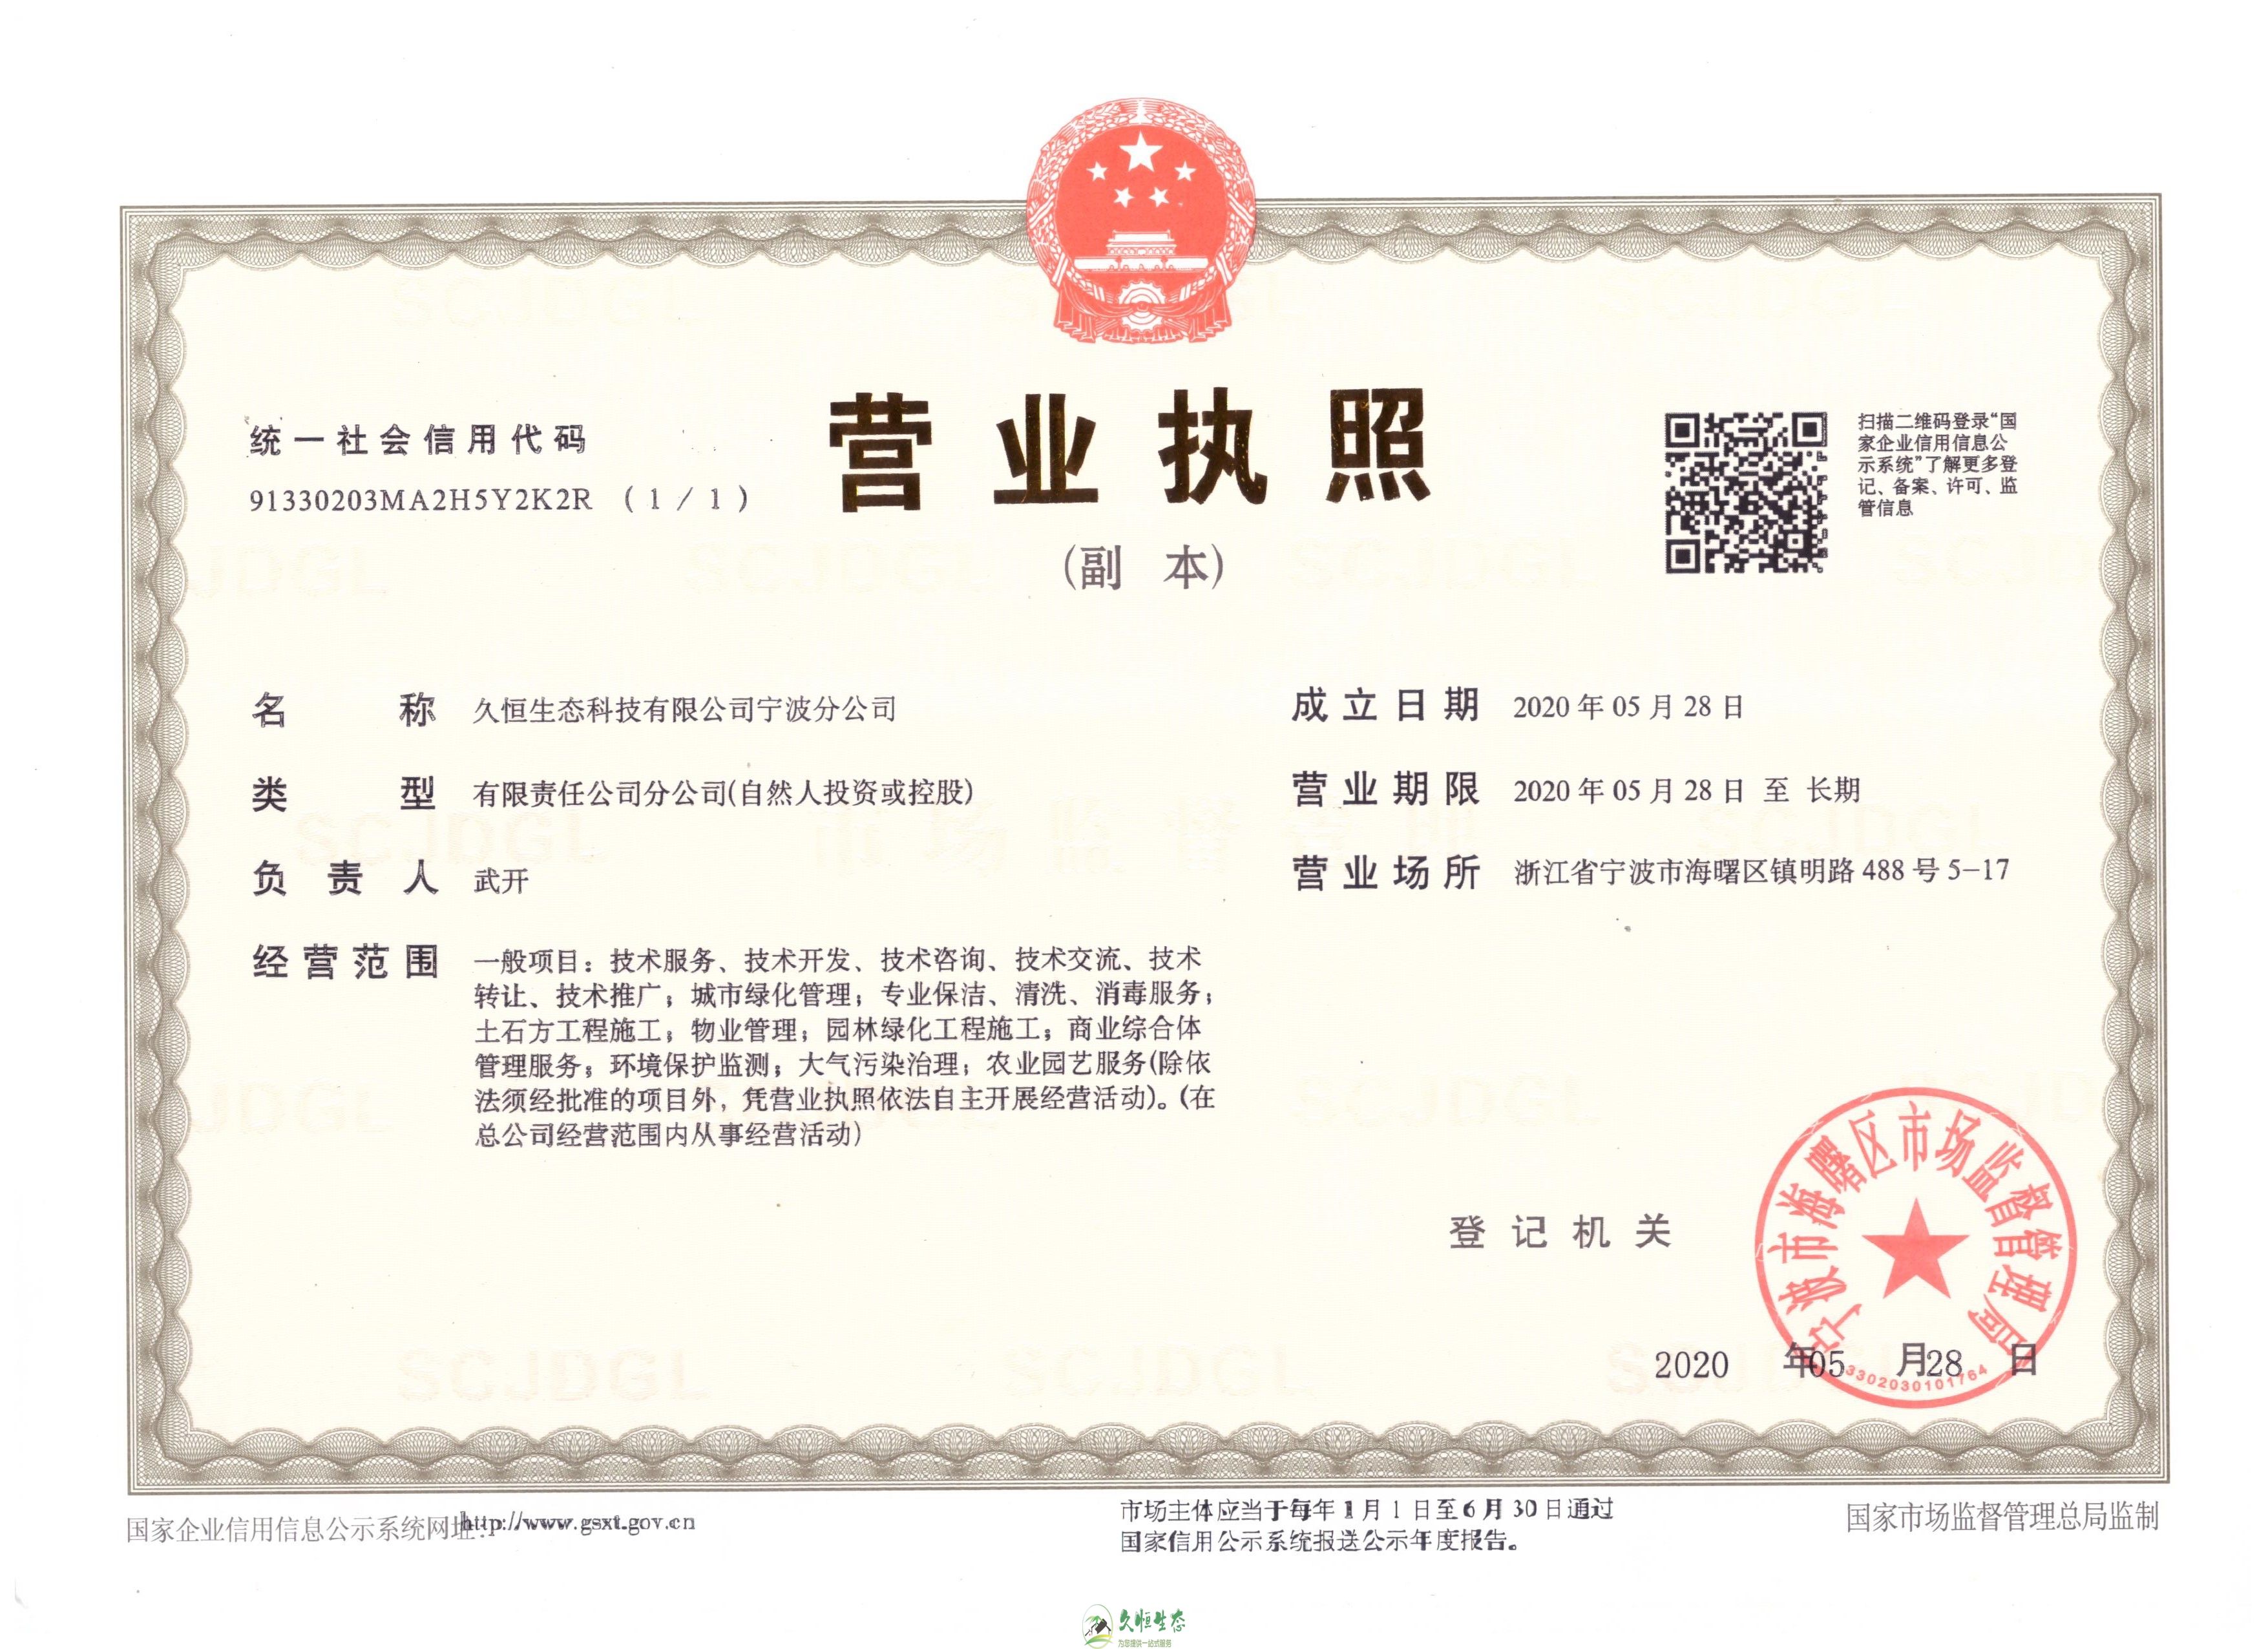 桐庐久恒生态宁波分公司2020年5月28日成立